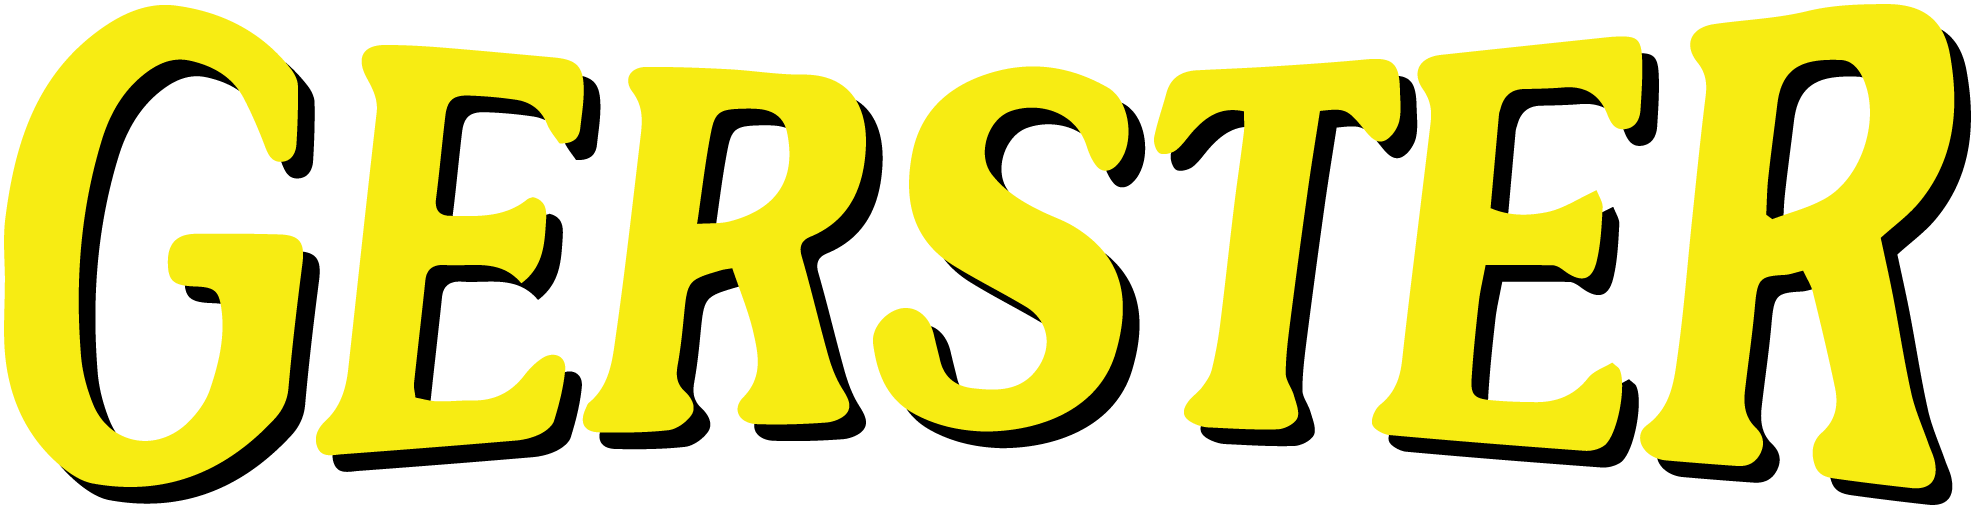 Gerster Triple E Towing & Repair logo